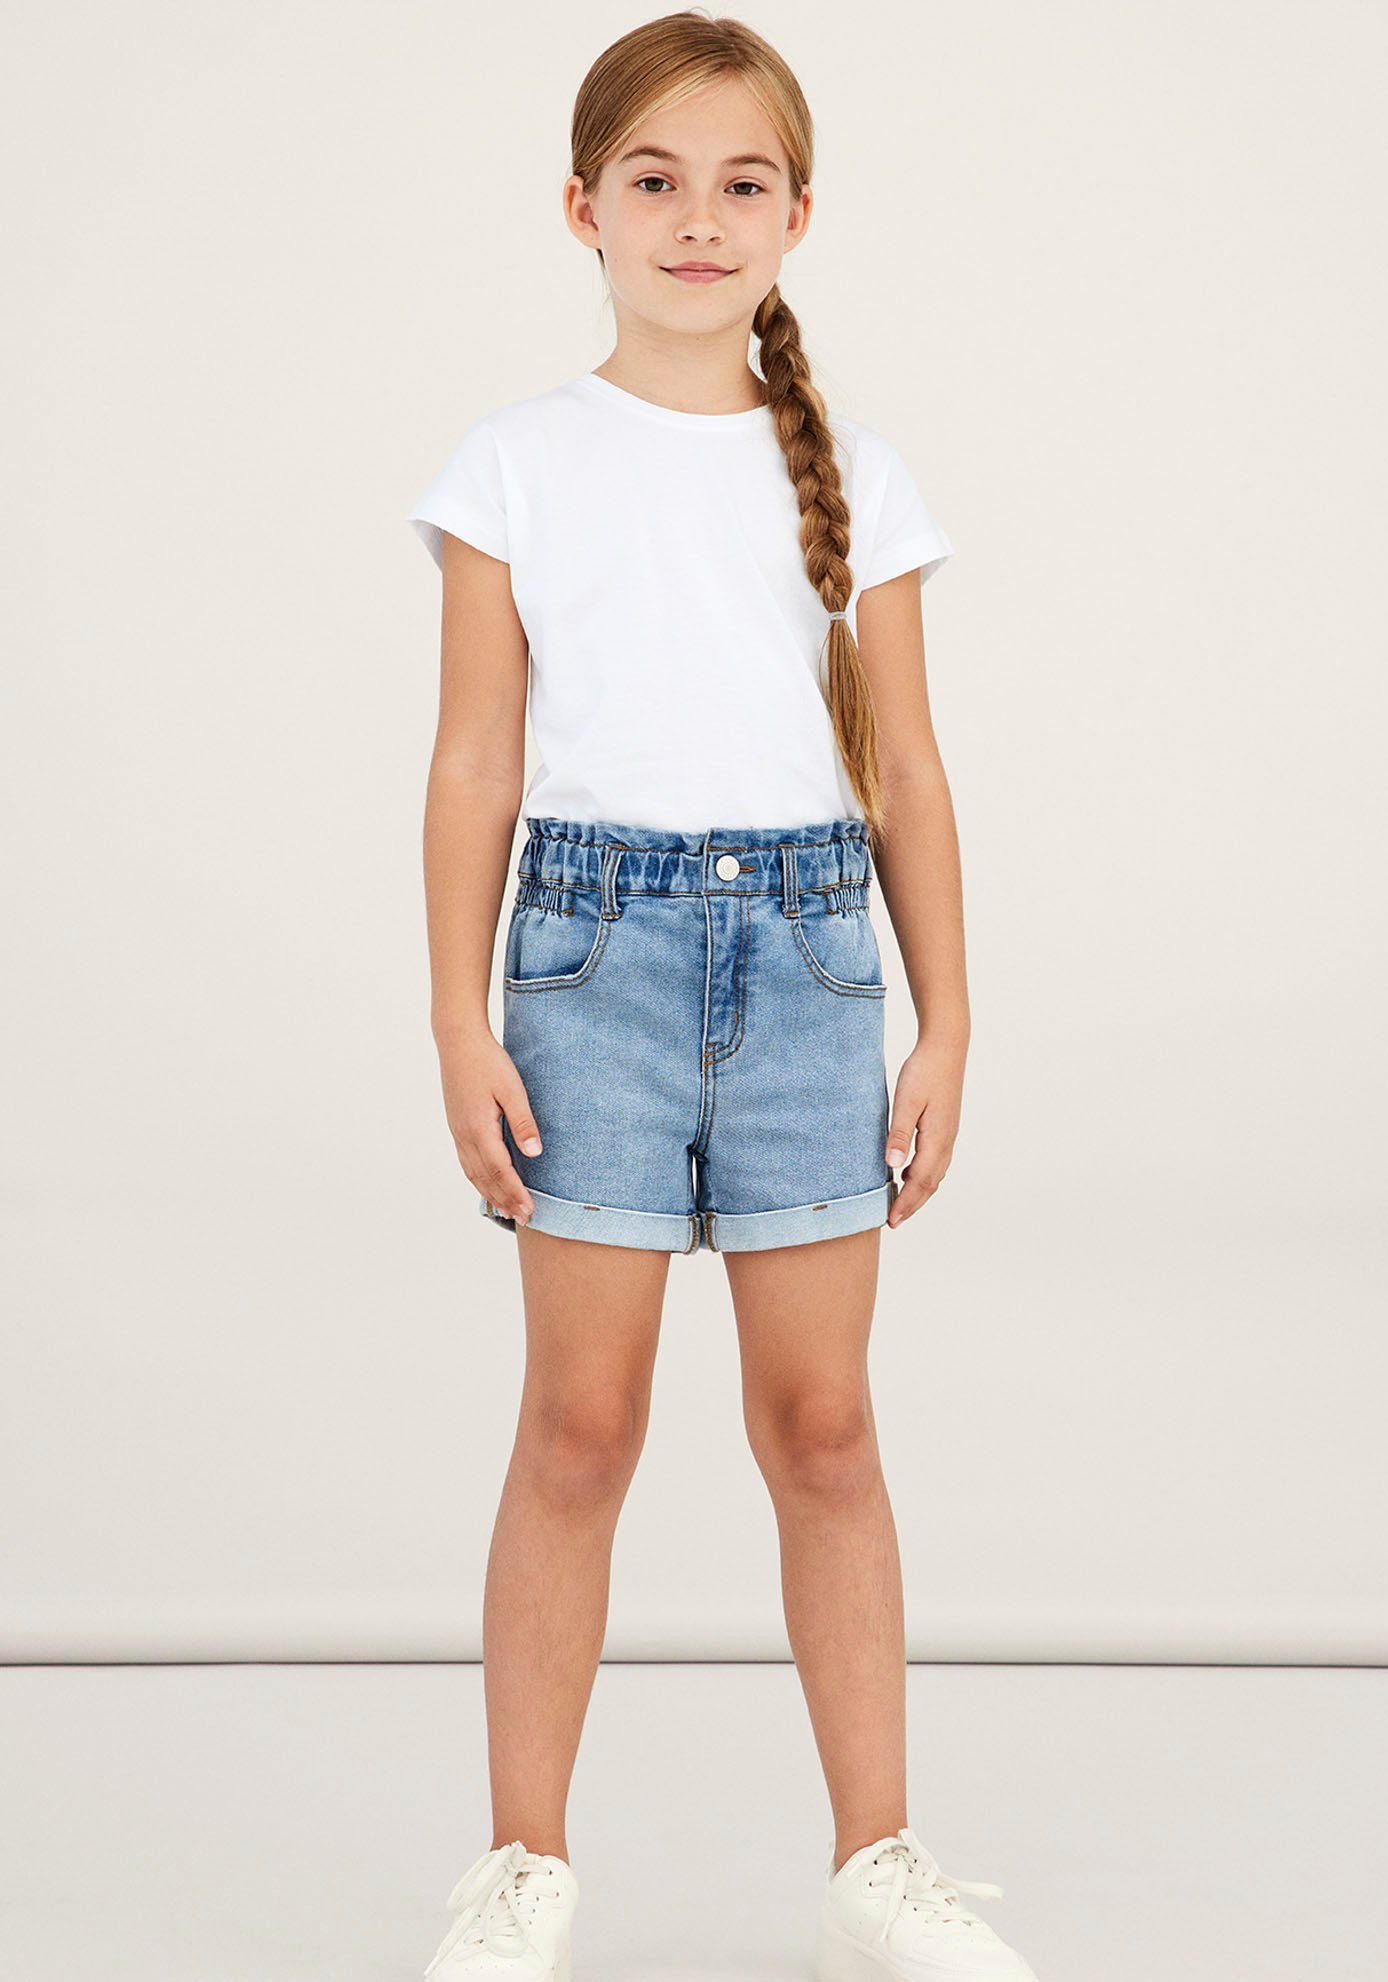 Mädchen Jeans Shorts online kaufen | OTTO